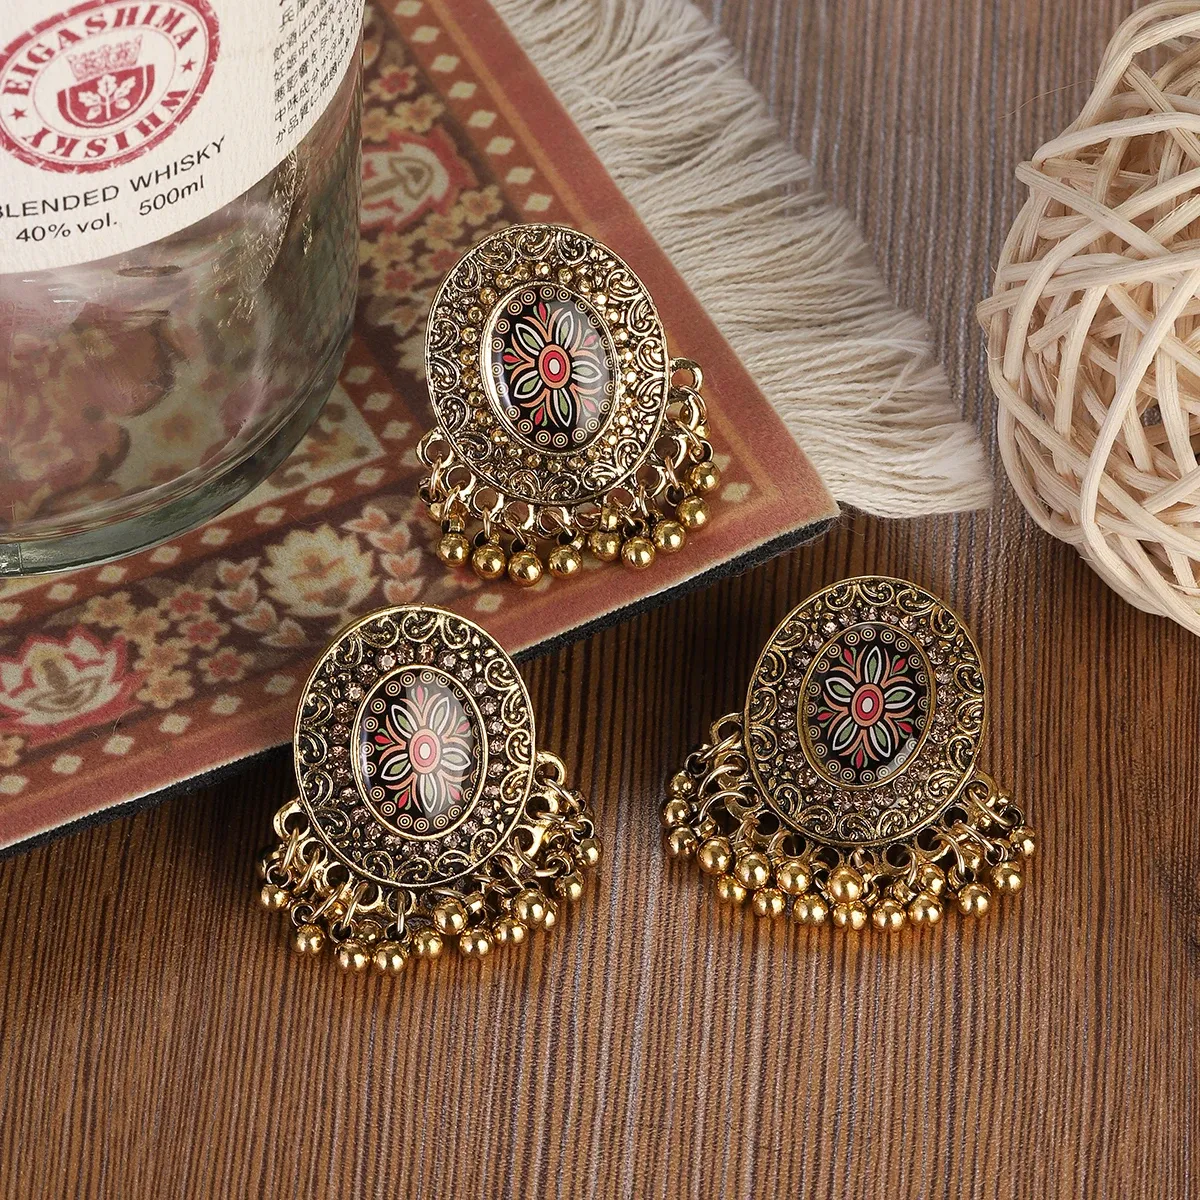 Fleur ethnique Indian Brouling / Ring Bijoux Bijoux Vintage Gold Couleur ronde Round Brouilles d'oreille